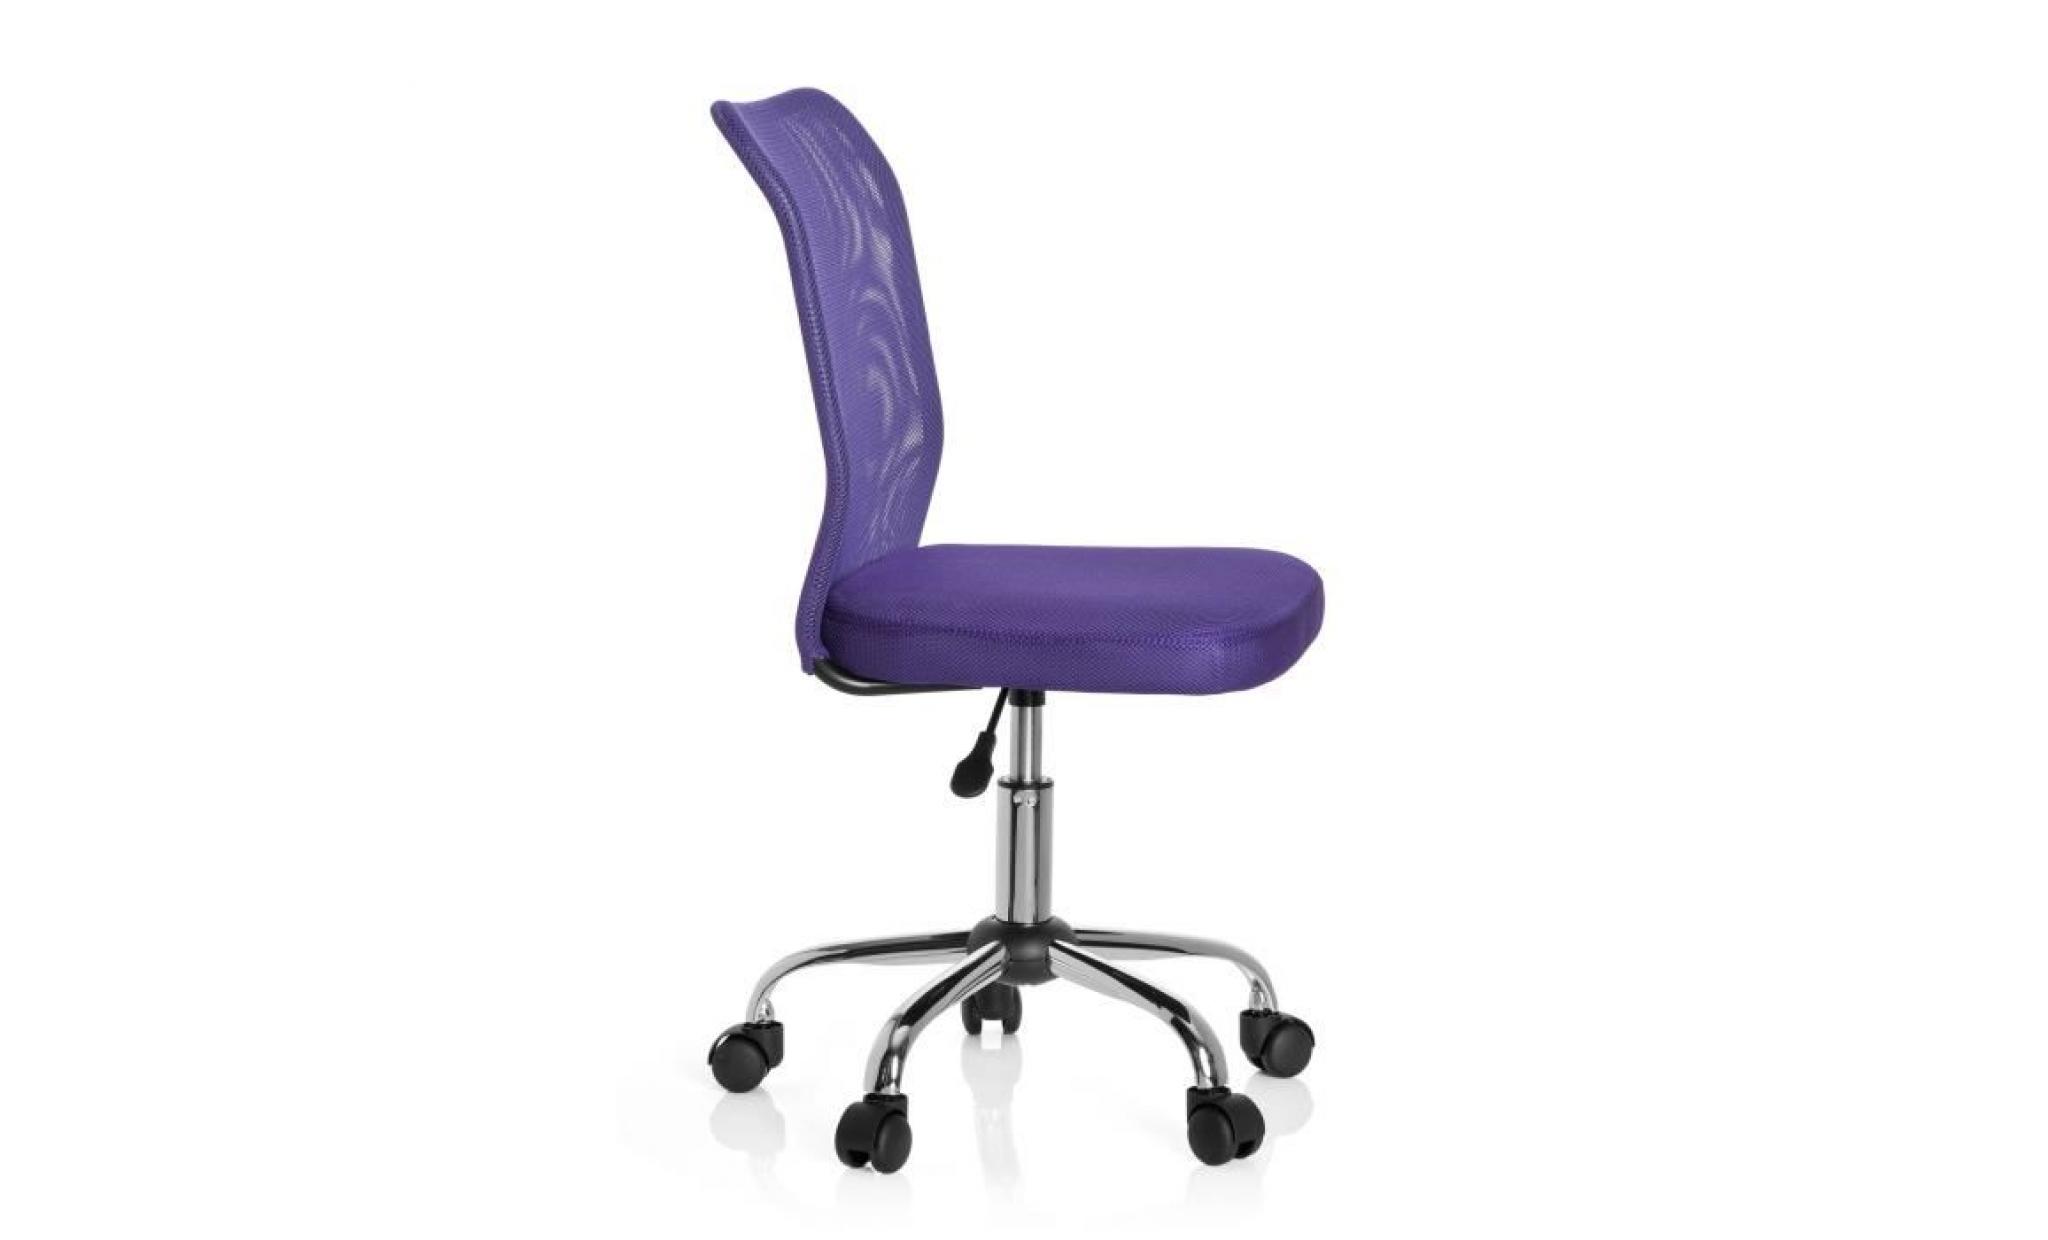 siège de bureau pour enfant / siège tournant kiddy net tissu maille violet hjh office pas cher